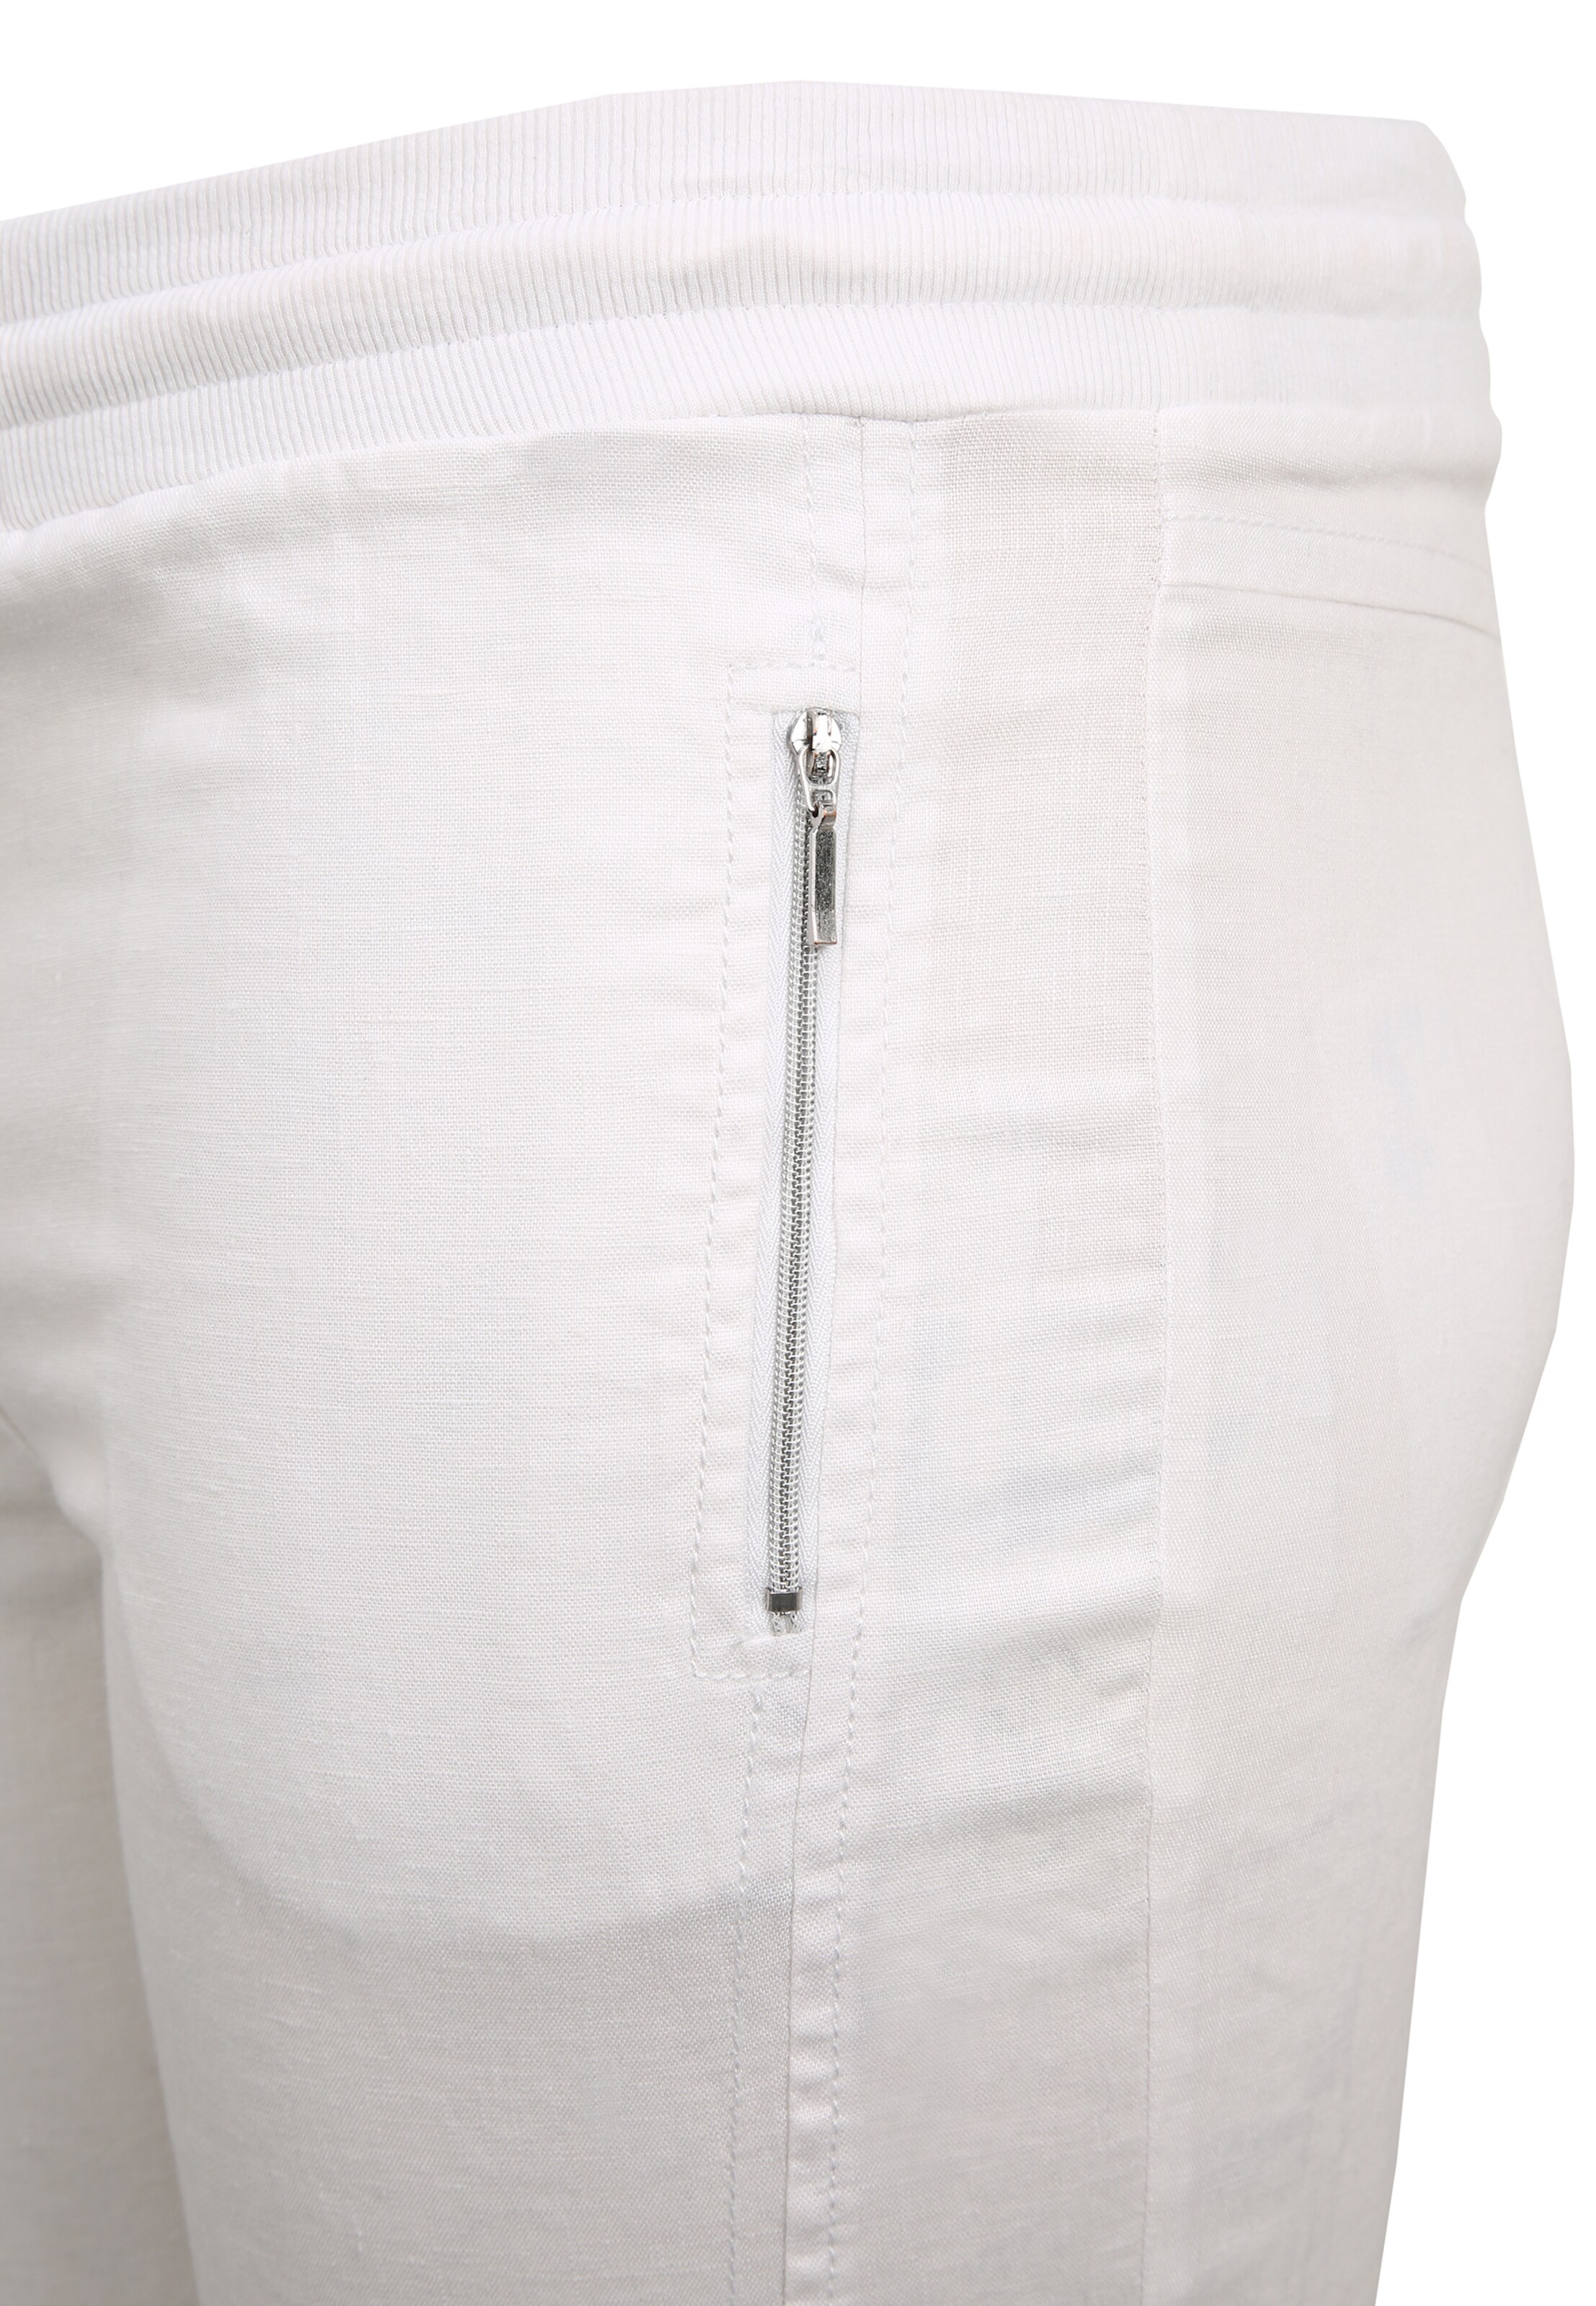 Frauen Große Größen Doris Streich Leinenhose mit Reißverschlusstaschen in Weiß - DG62162